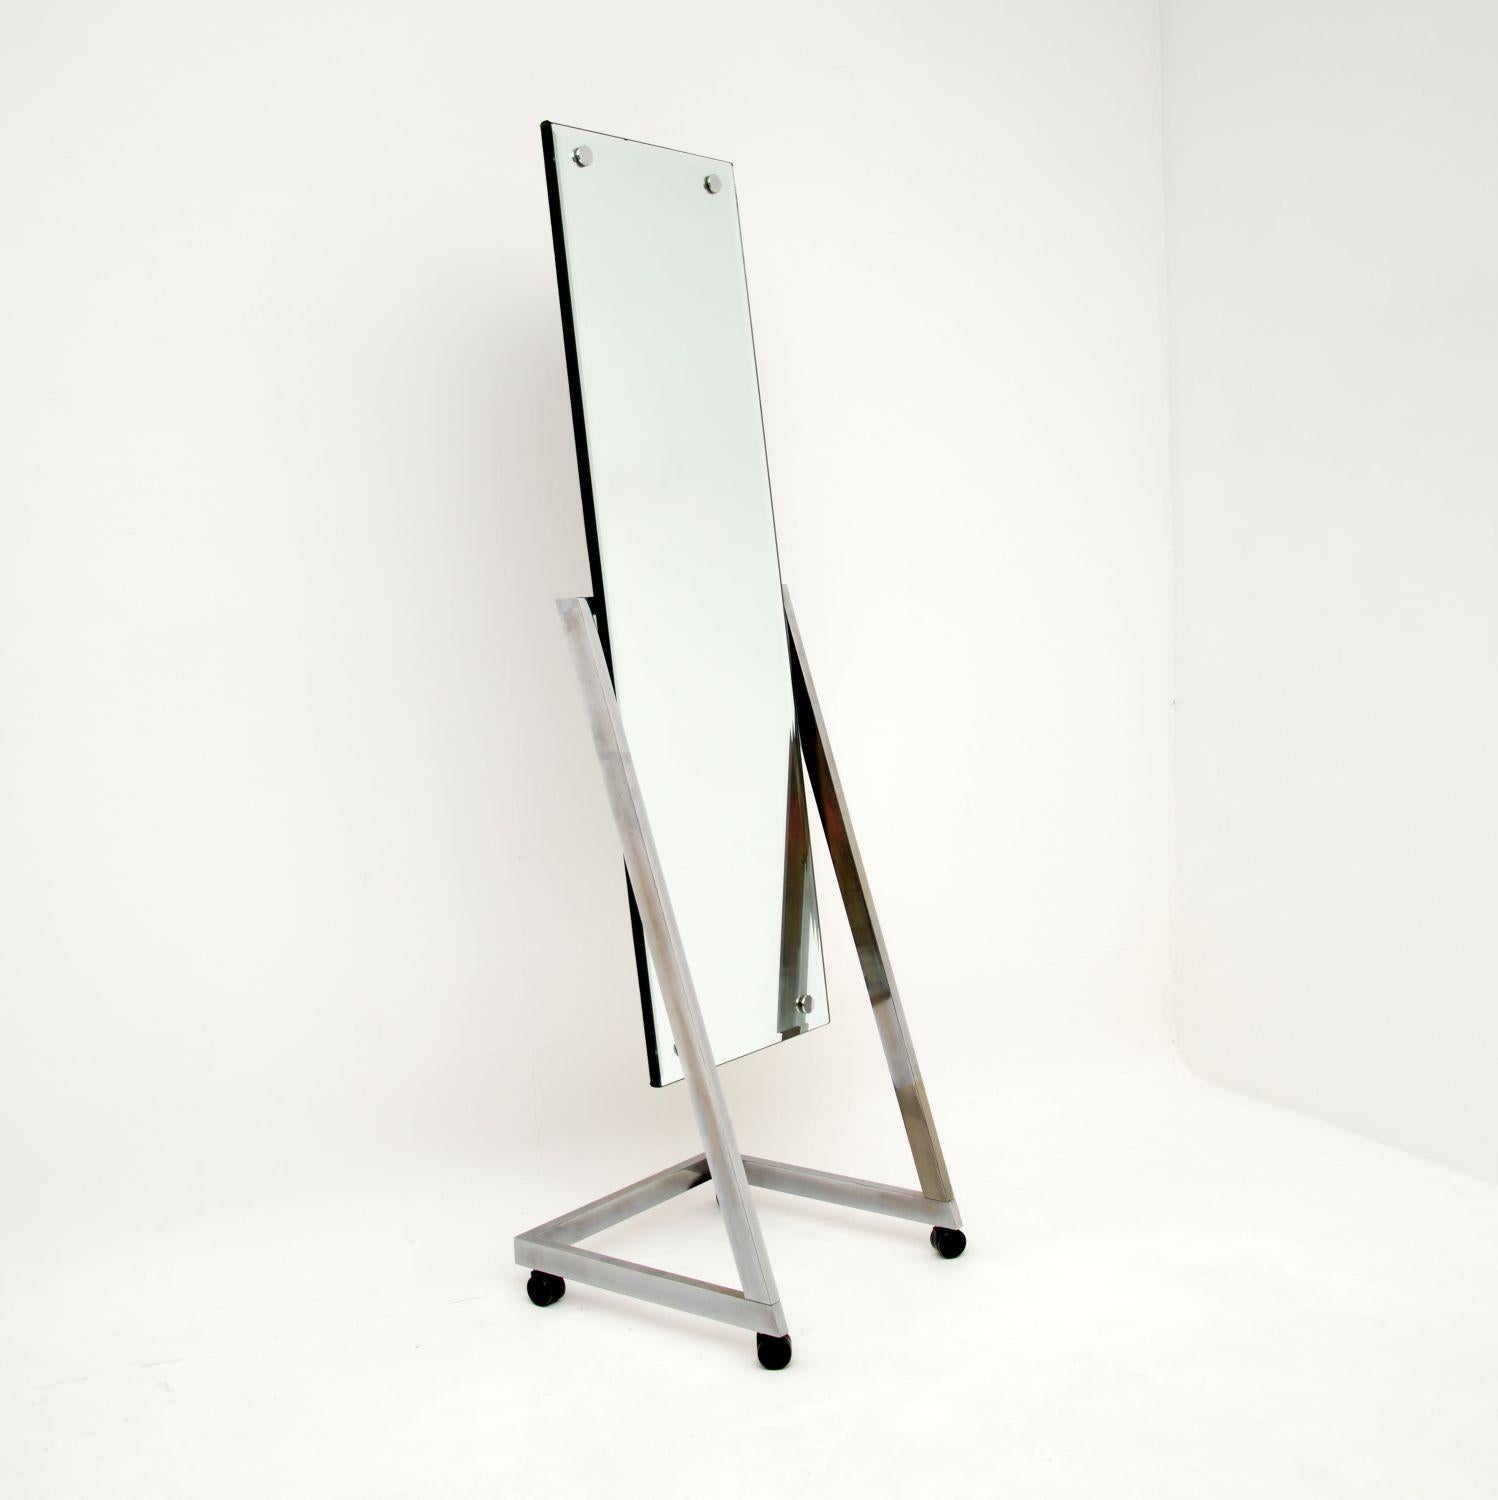 Un miroir de sol chromé vintage très élégant et extrêmement bien fait. Fabriqué en Angleterre par Design/One, il date des années 1970.

Il est d'une superbe qualité et constitue un article très utile, il peut s'incliner et rouler en douceur sur des